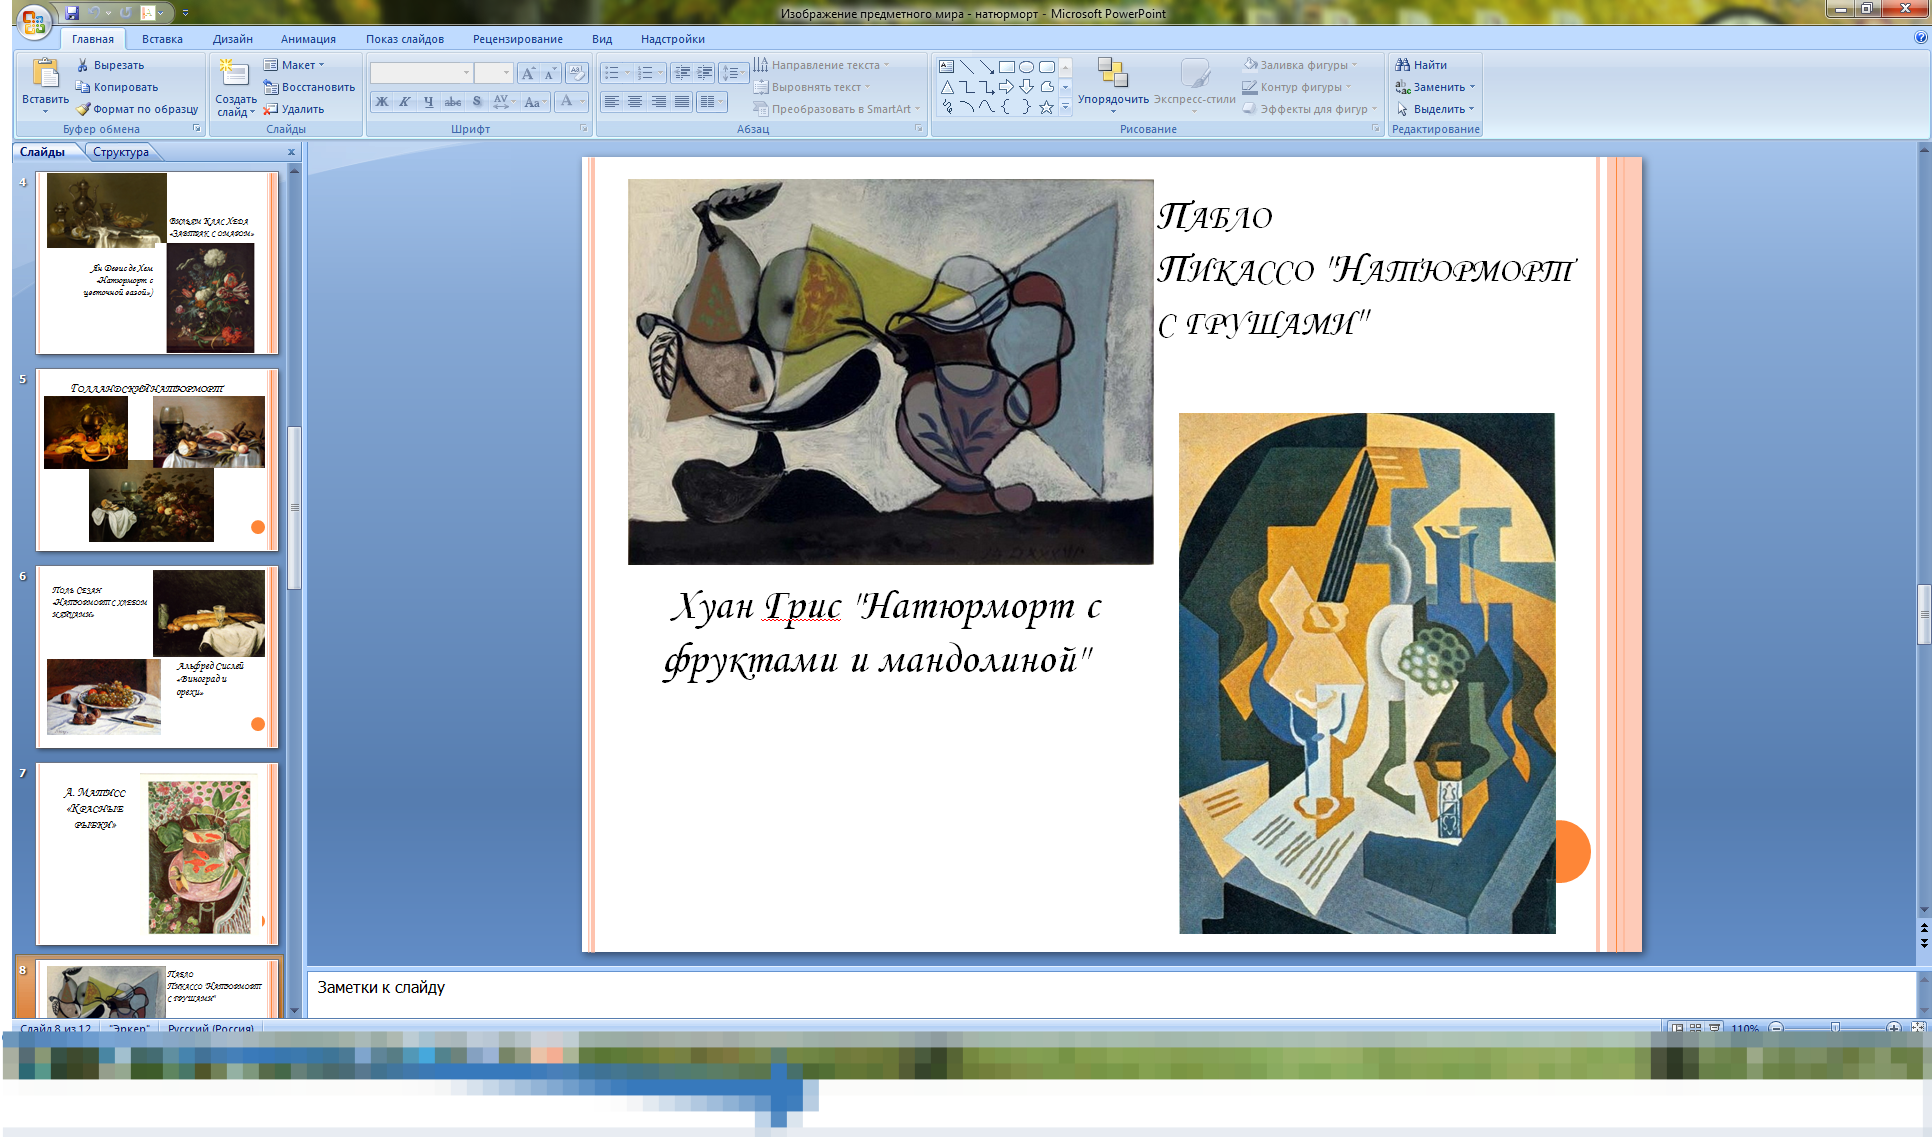 Конспект открытого урока по изобразительному искусству для 6 класса по программе Б.М.Неменского Изображение предметного мира - натюрморт